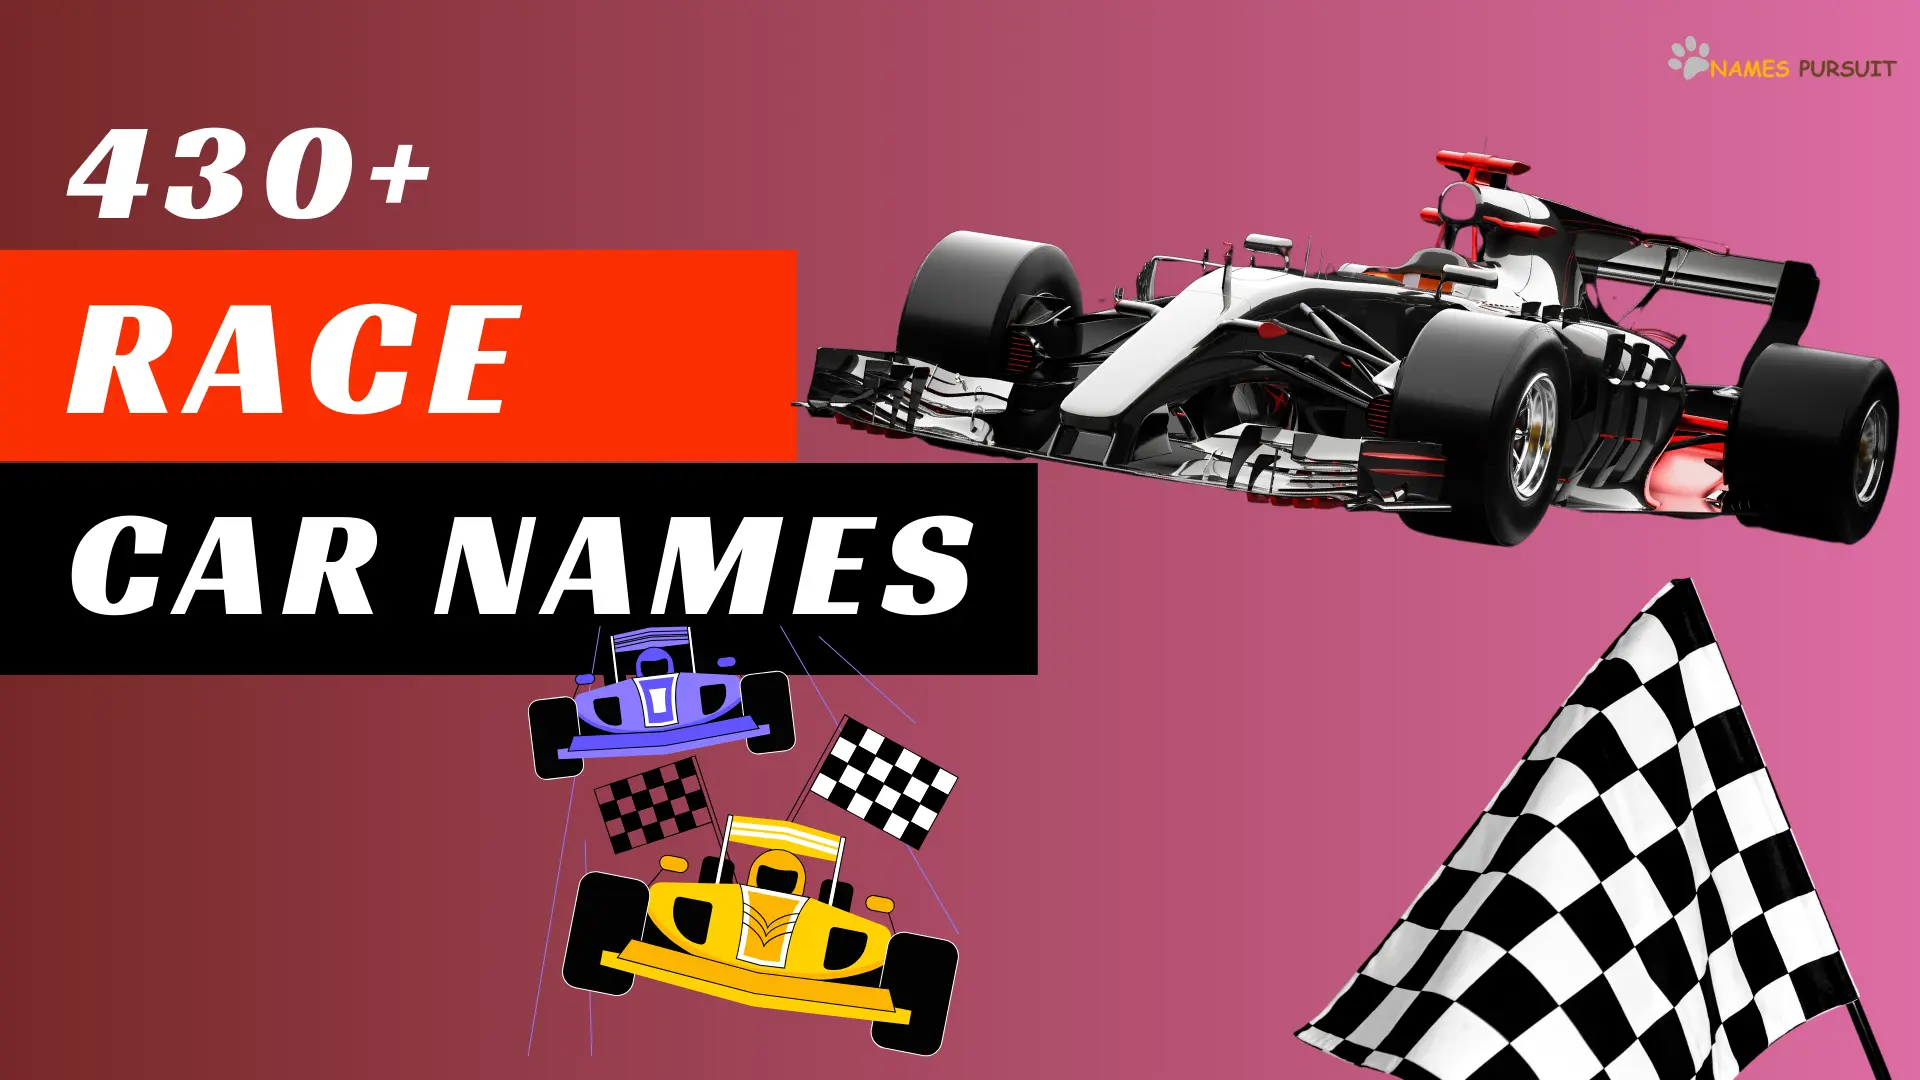 Race Car Names-names pursuit